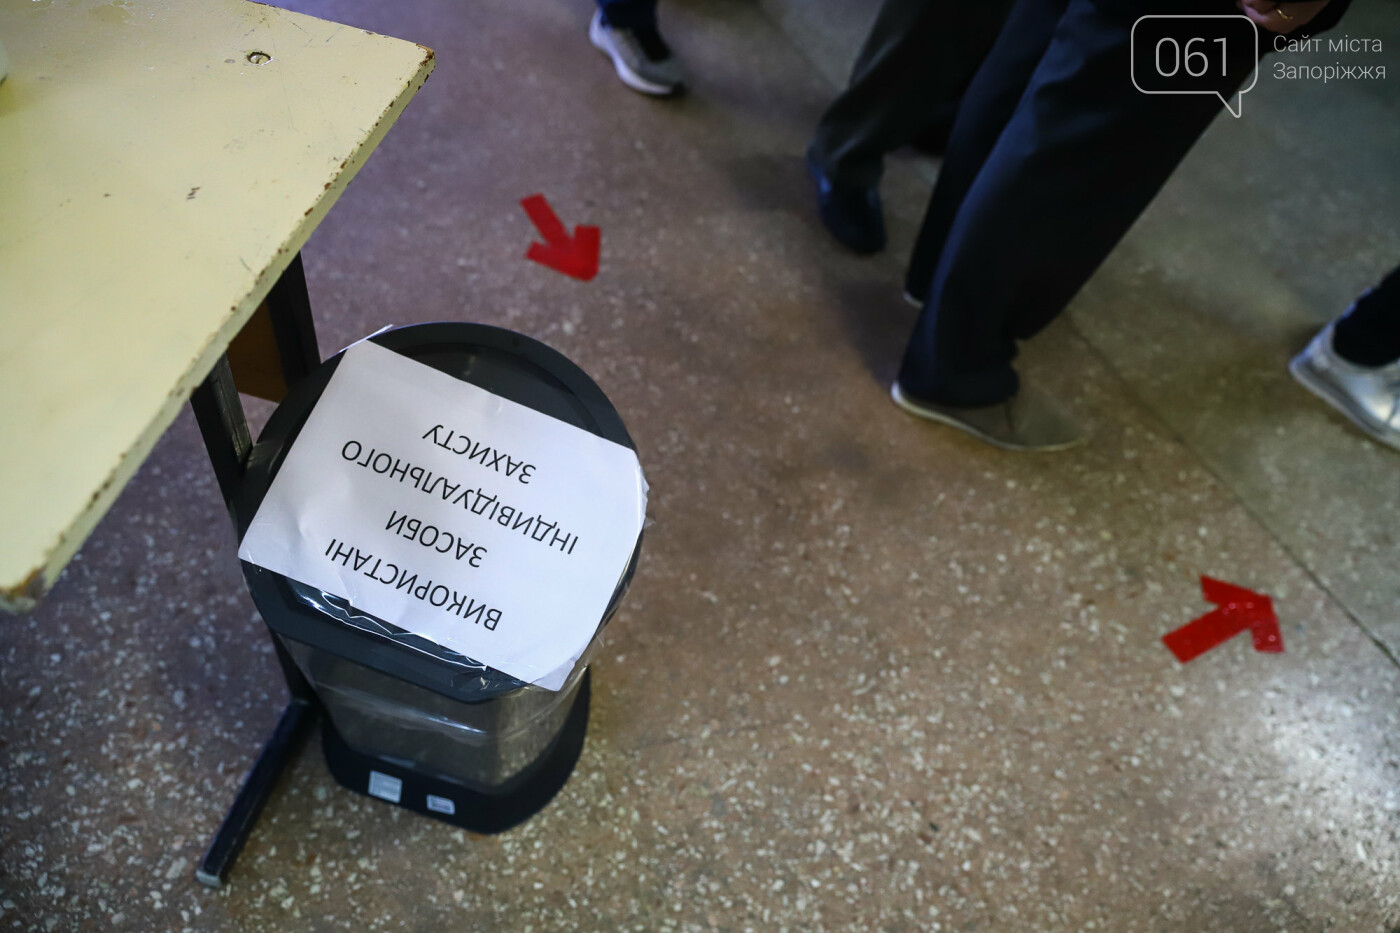 Выборы в условиях карантина: как запорожцы выбирают мэра и депутатов, - ФОТОРЕПОРТАЖ, фото-10